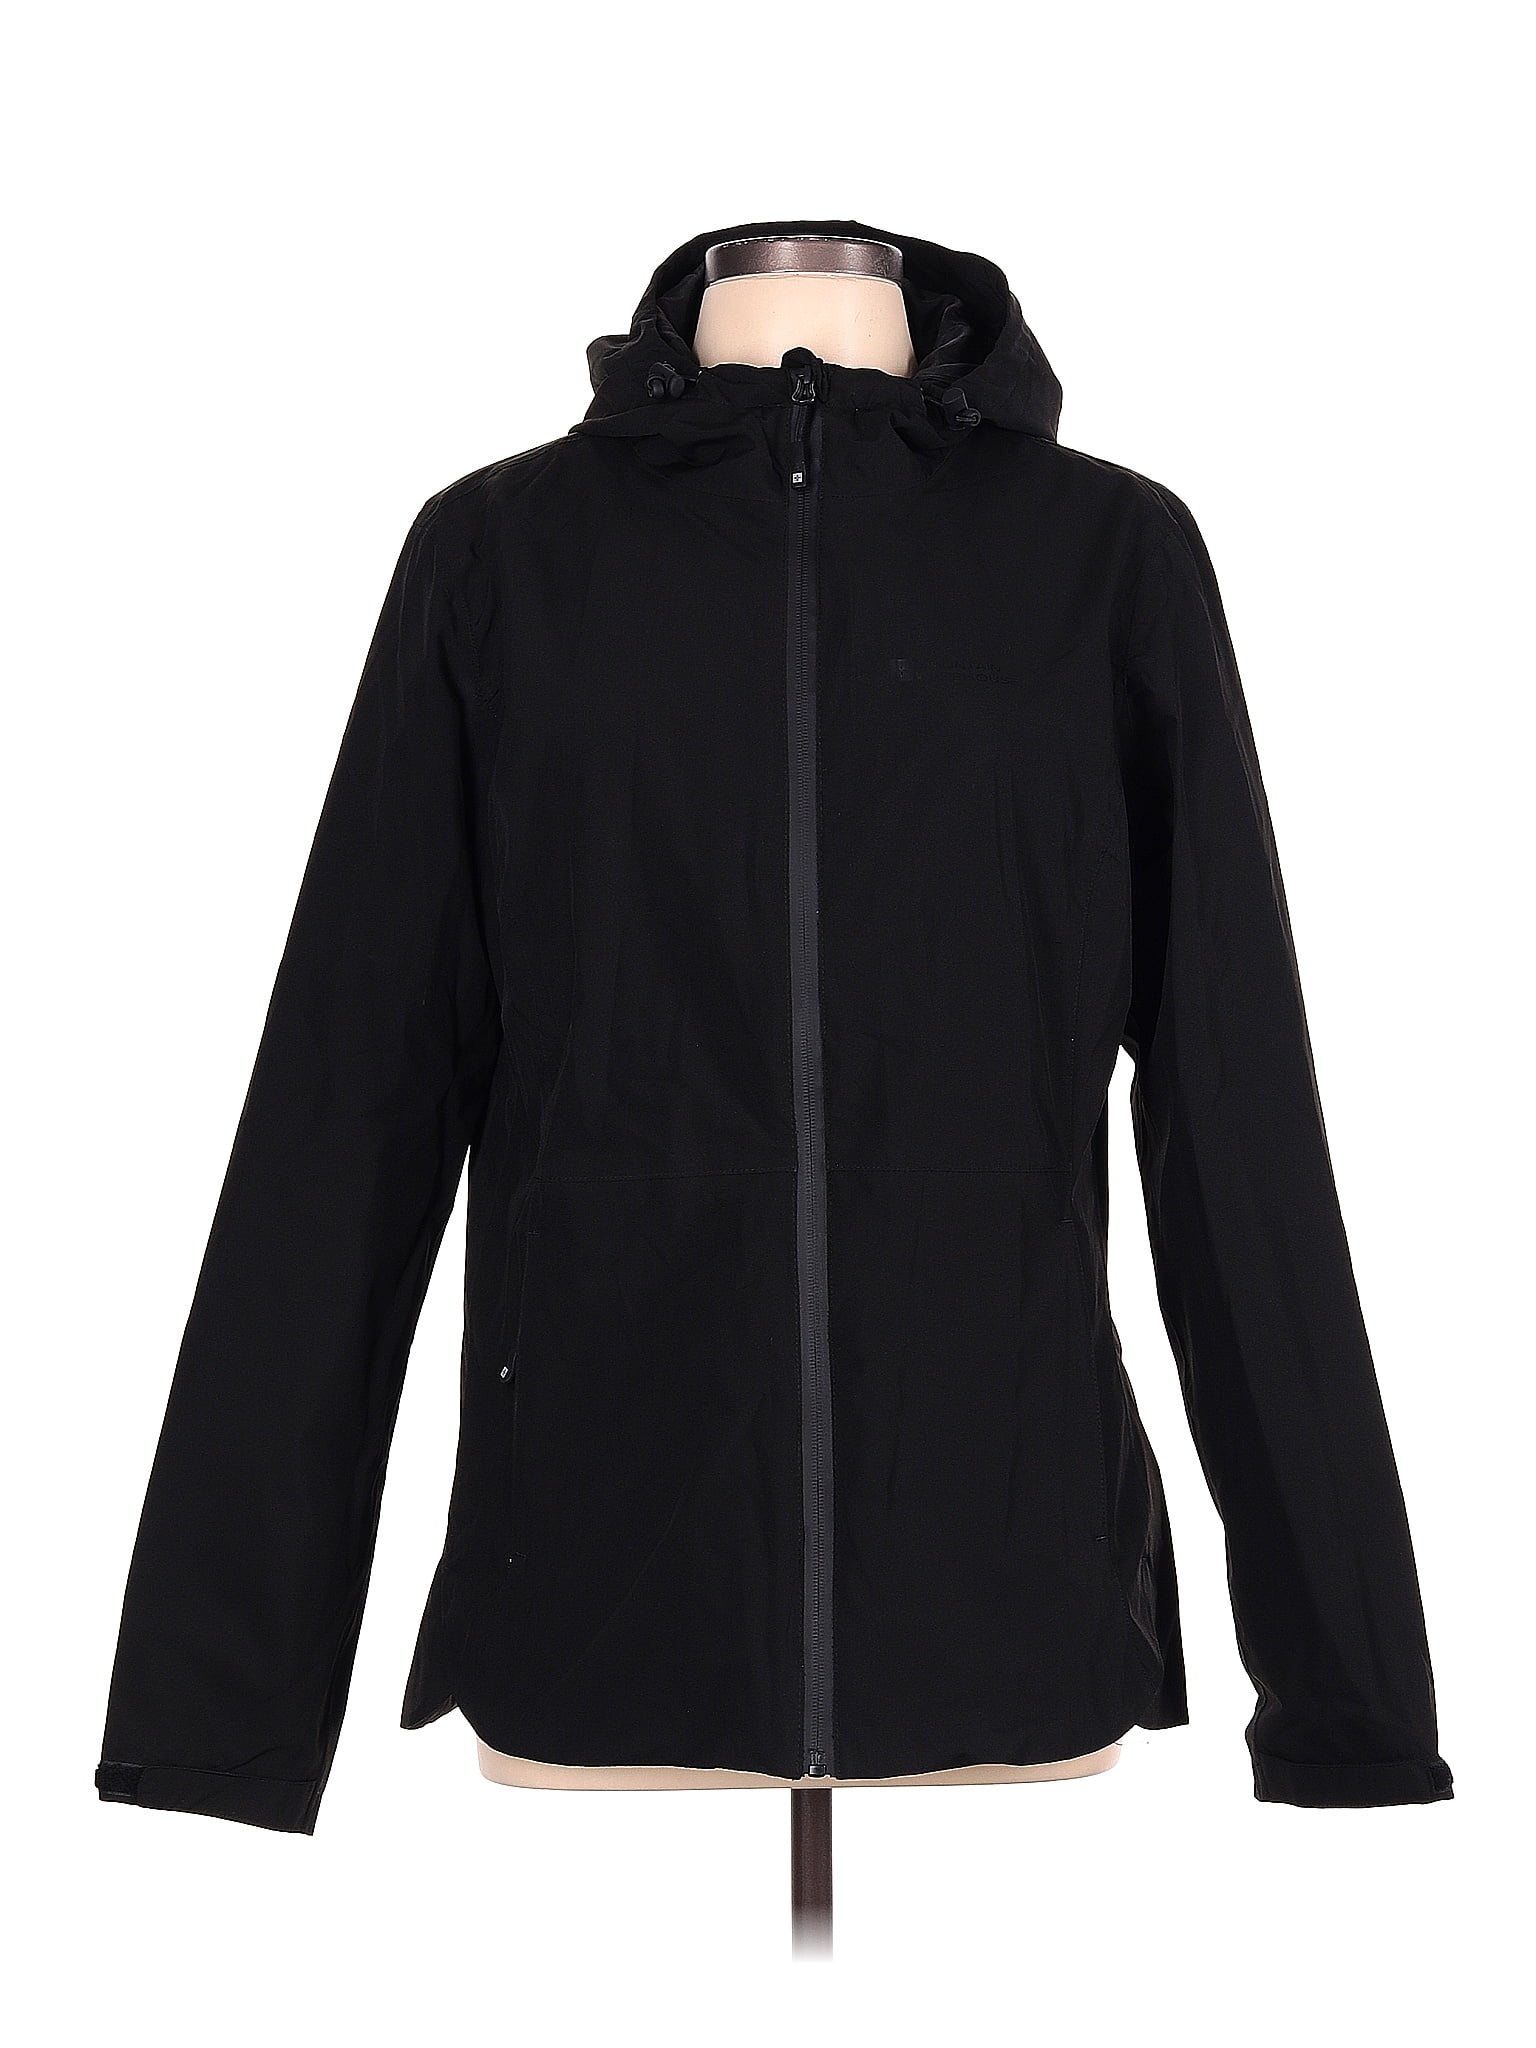 Weatherproof 100% Polyester Solid Black Jacket Size 10 - 69% off | thredUP